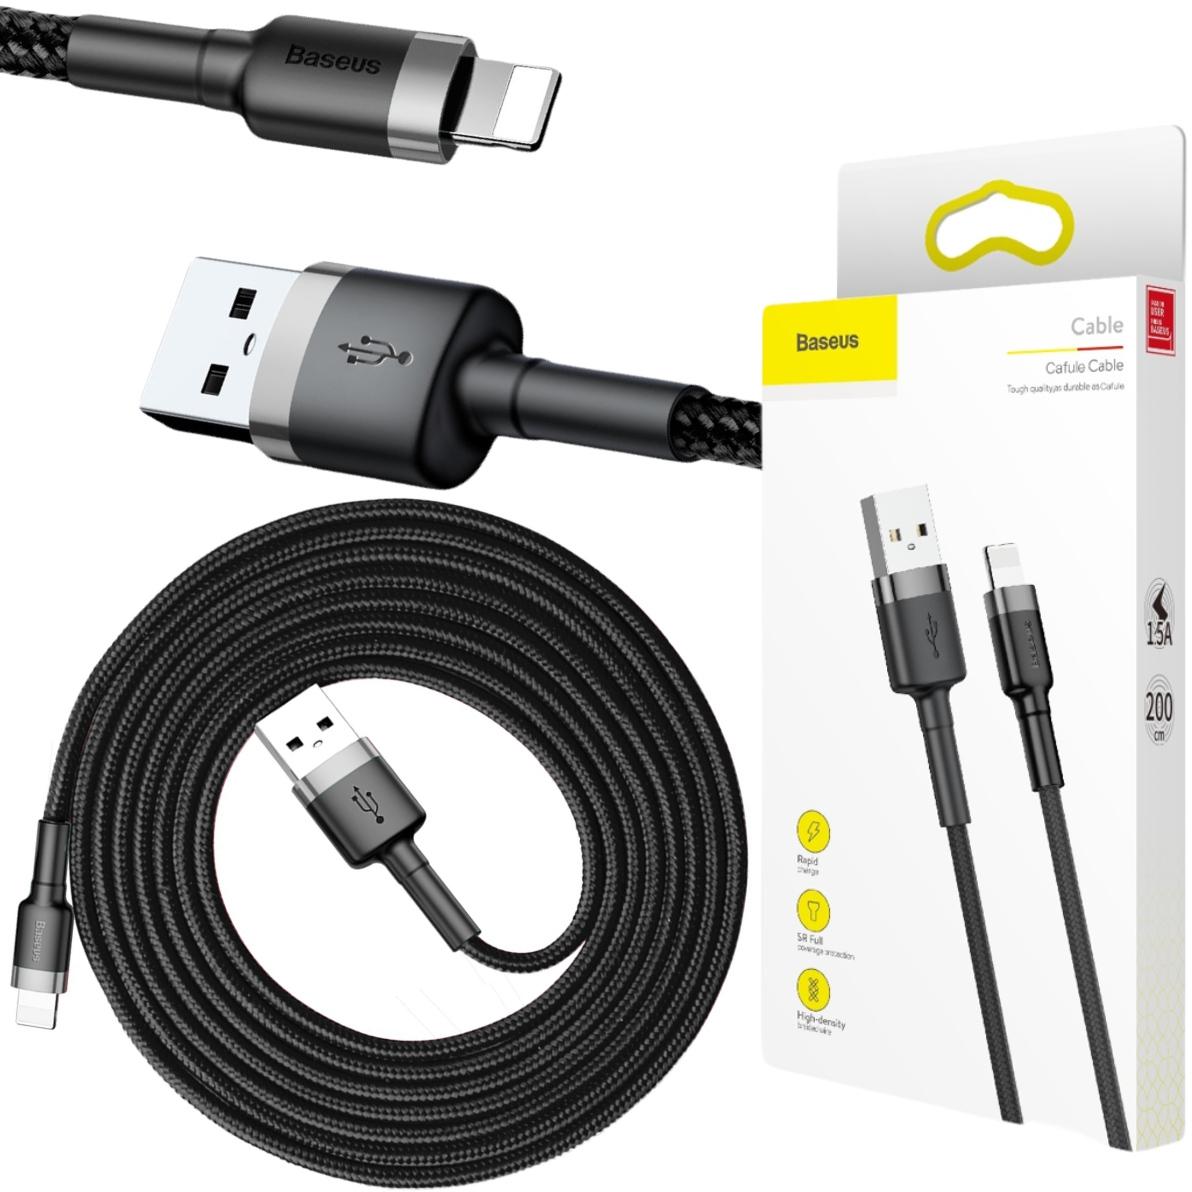 Baseus Cafule Cable wytrzymały nylonowy kabel USB / Lightning QC 3.0 1,5A 2m w oplocie (CALKLF-RG1) - najważniejsze cechy: